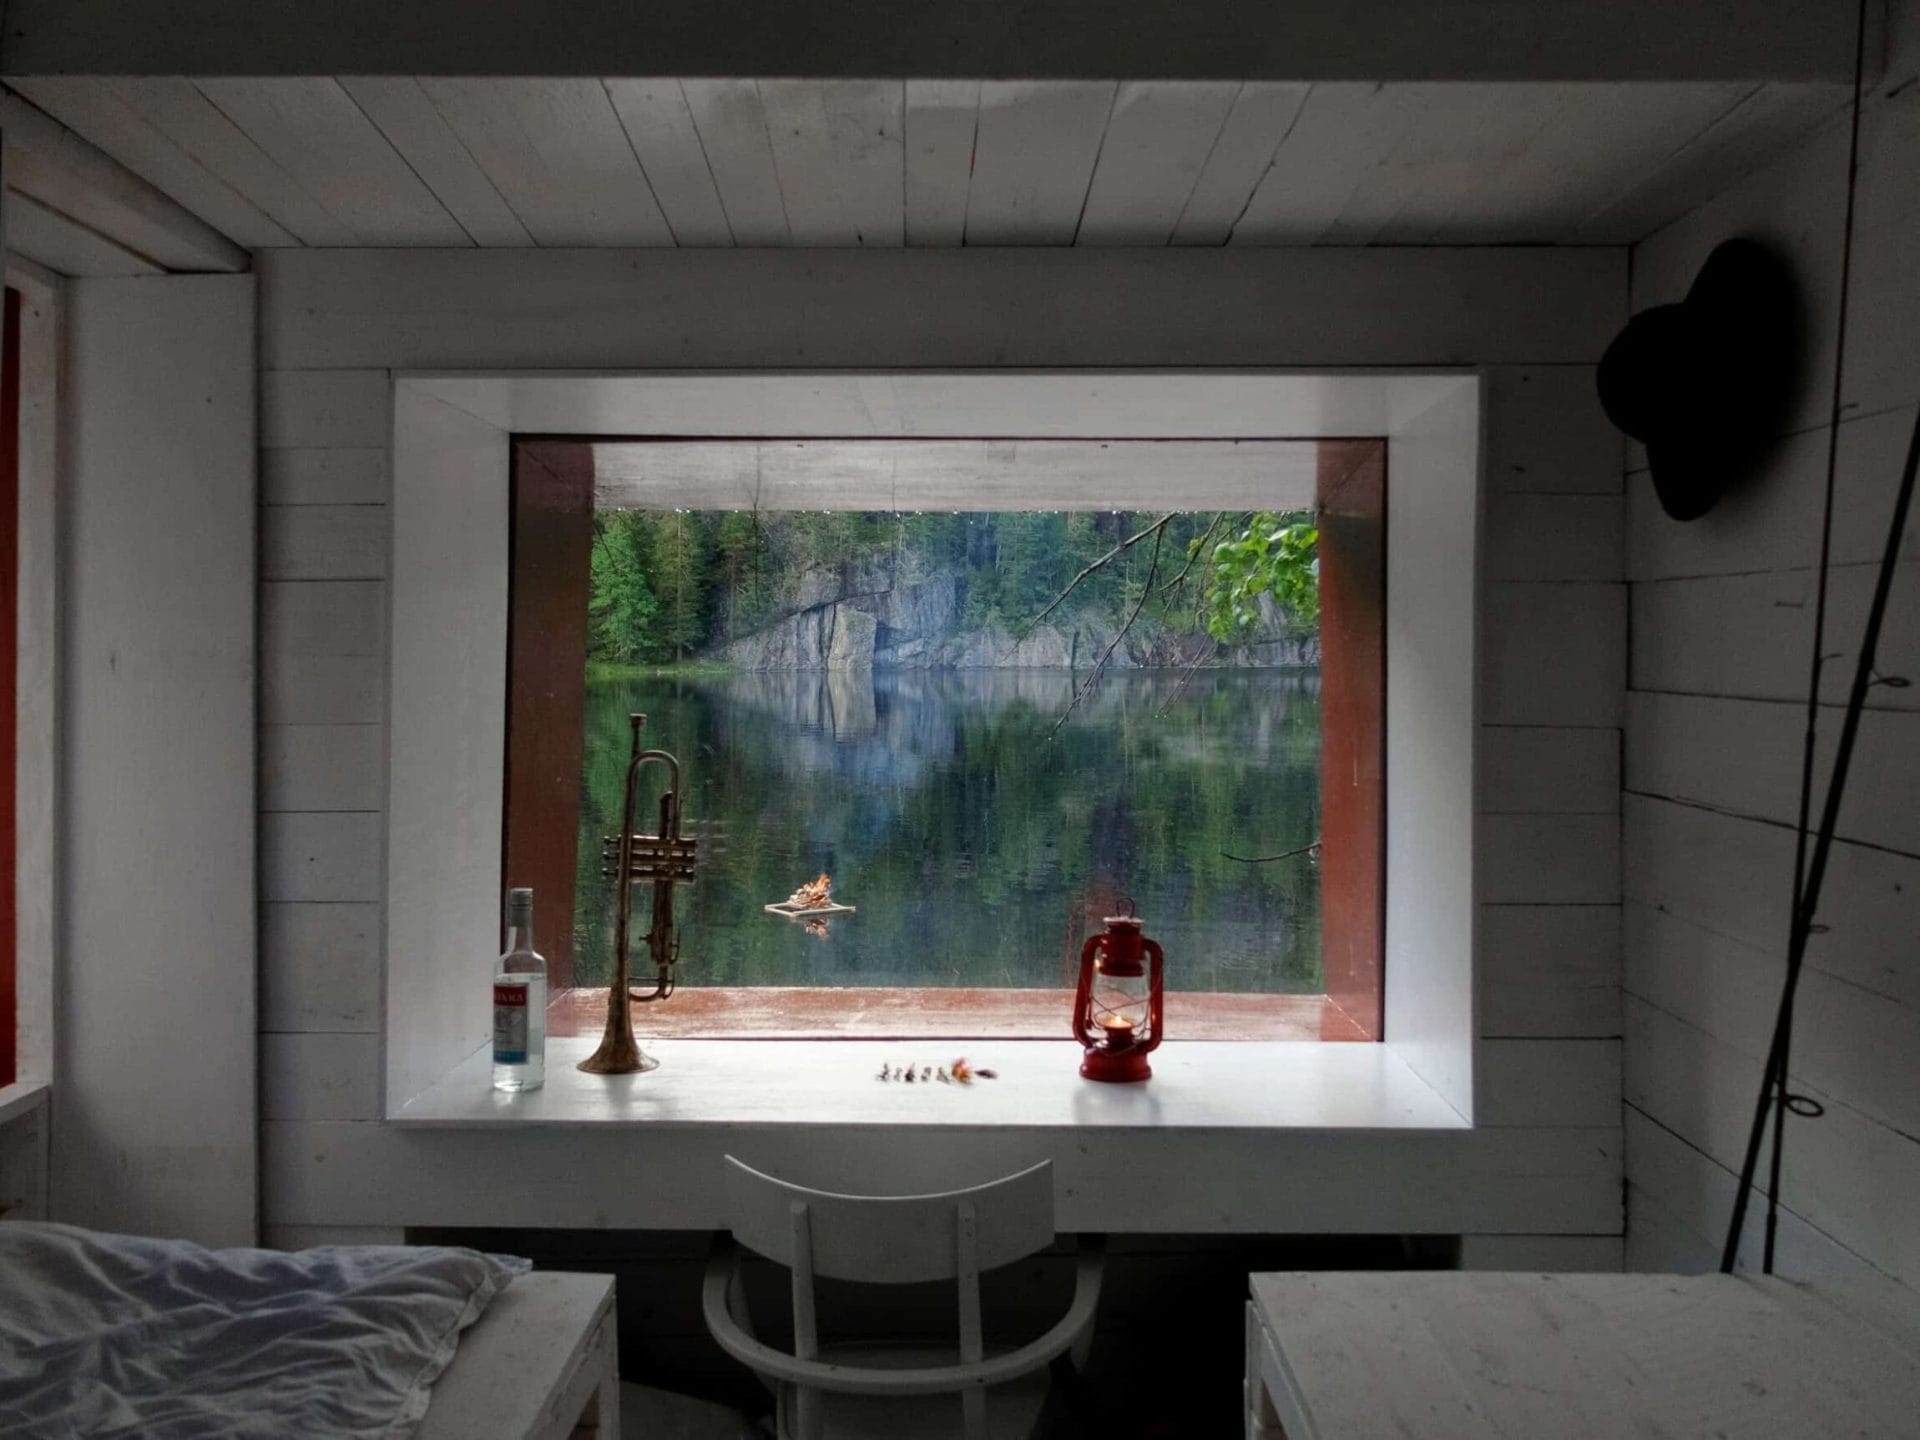 verborgen hut in de Noorse natuur